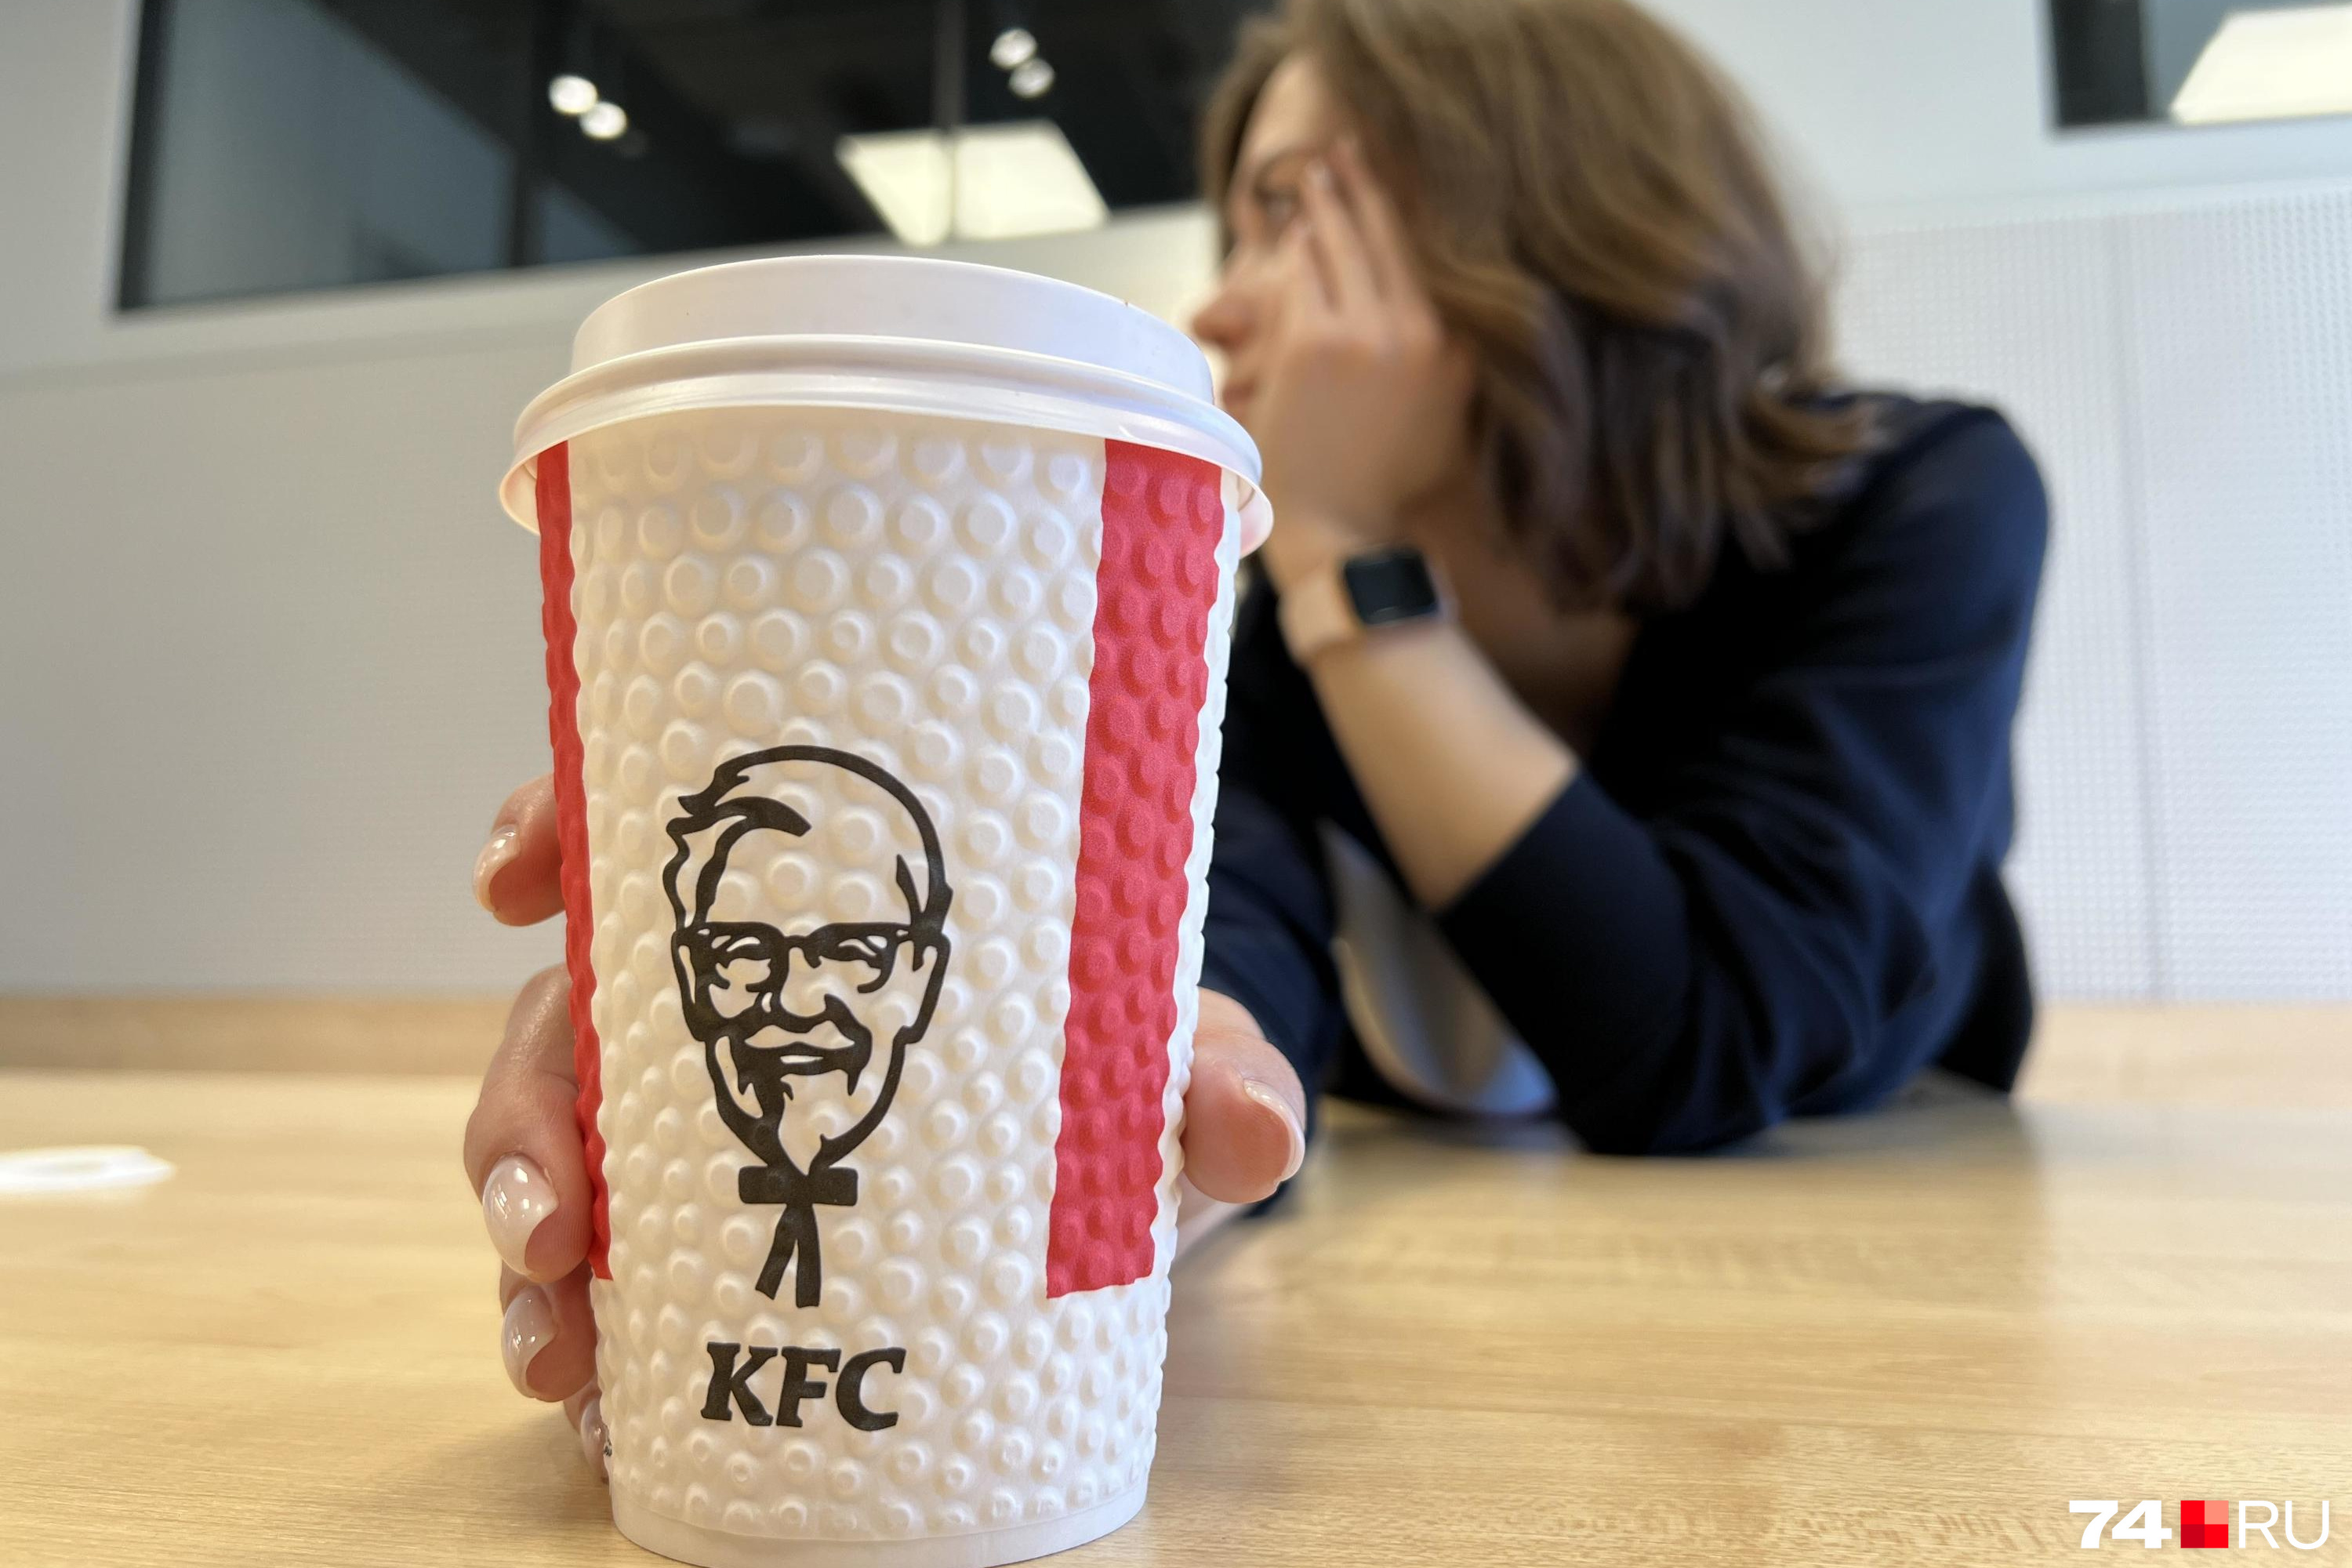    KFC  .     